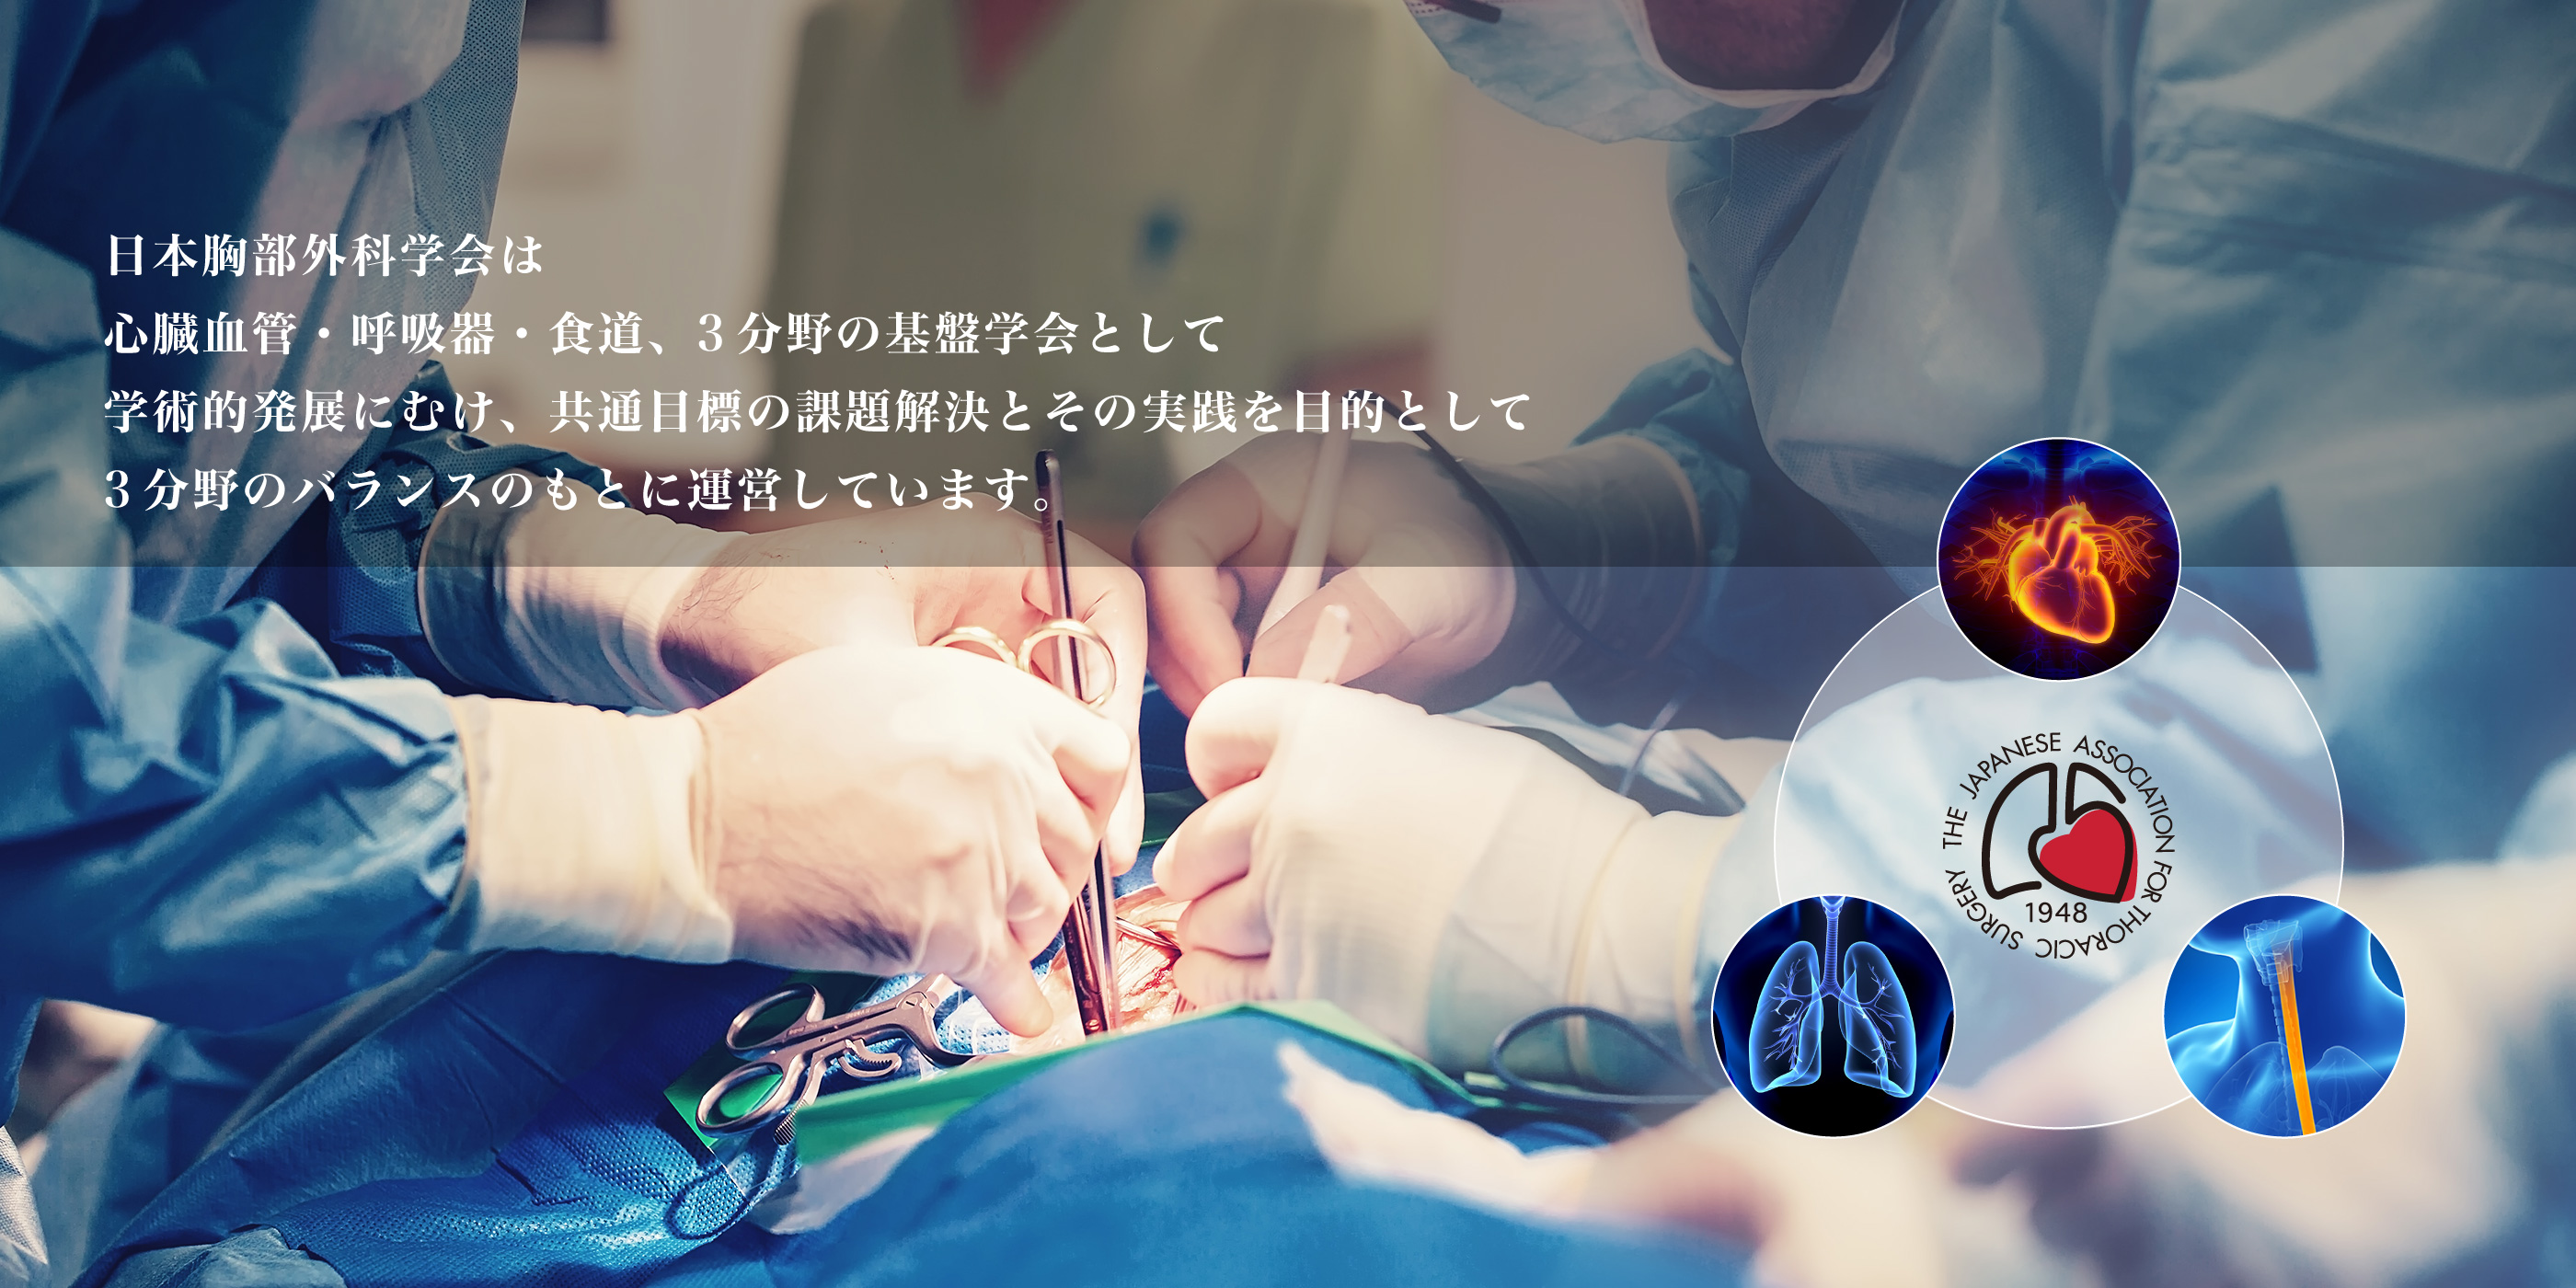 日本胸部外科学会は心臓血管・呼吸器・食道、3分野の基盤学会として学術的発展にむけ、共通目標の課題解決とその実践を目的として3分野のバランスのもとに運営しています。